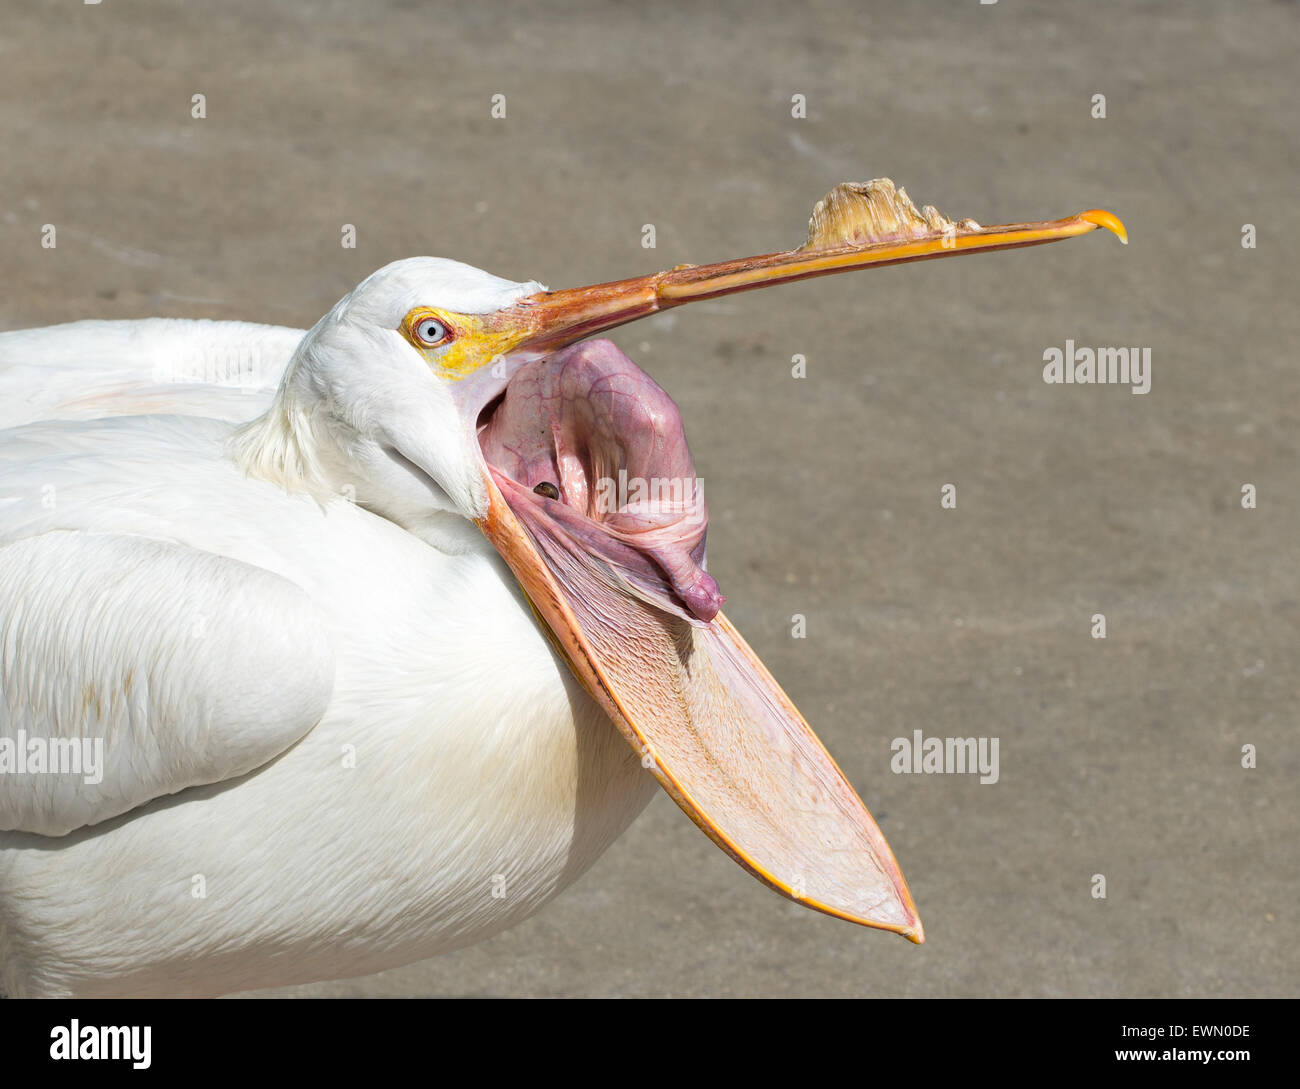 Pélican blanc avec bec ouvert montrant l'intérieur de sa pochette Banque D'Images